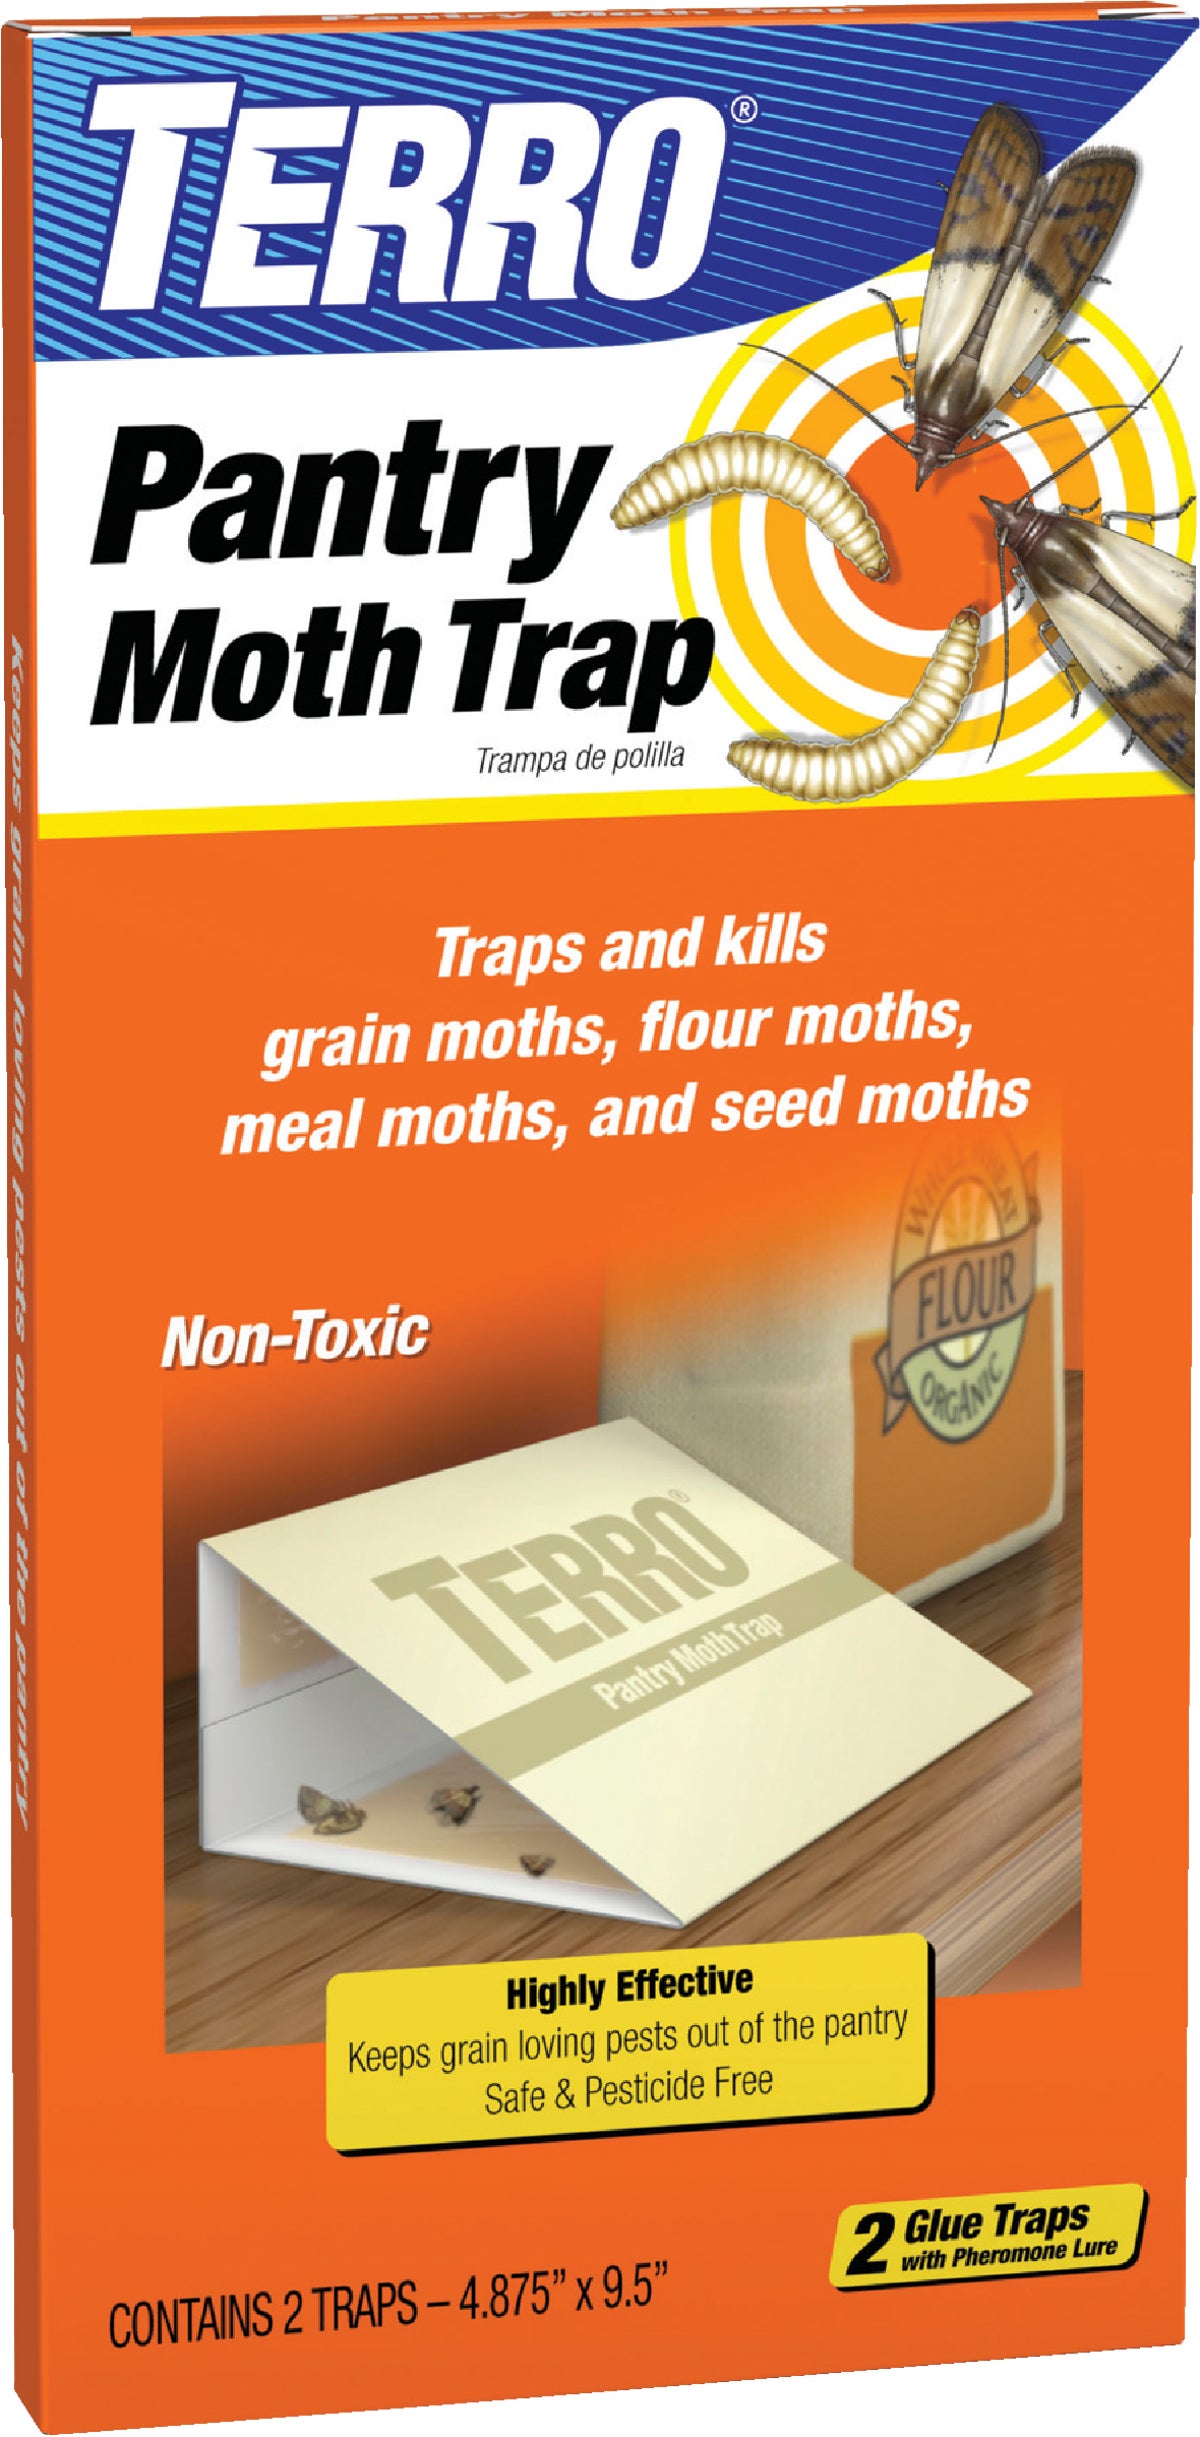 TERRO® Clothes Moth Alert